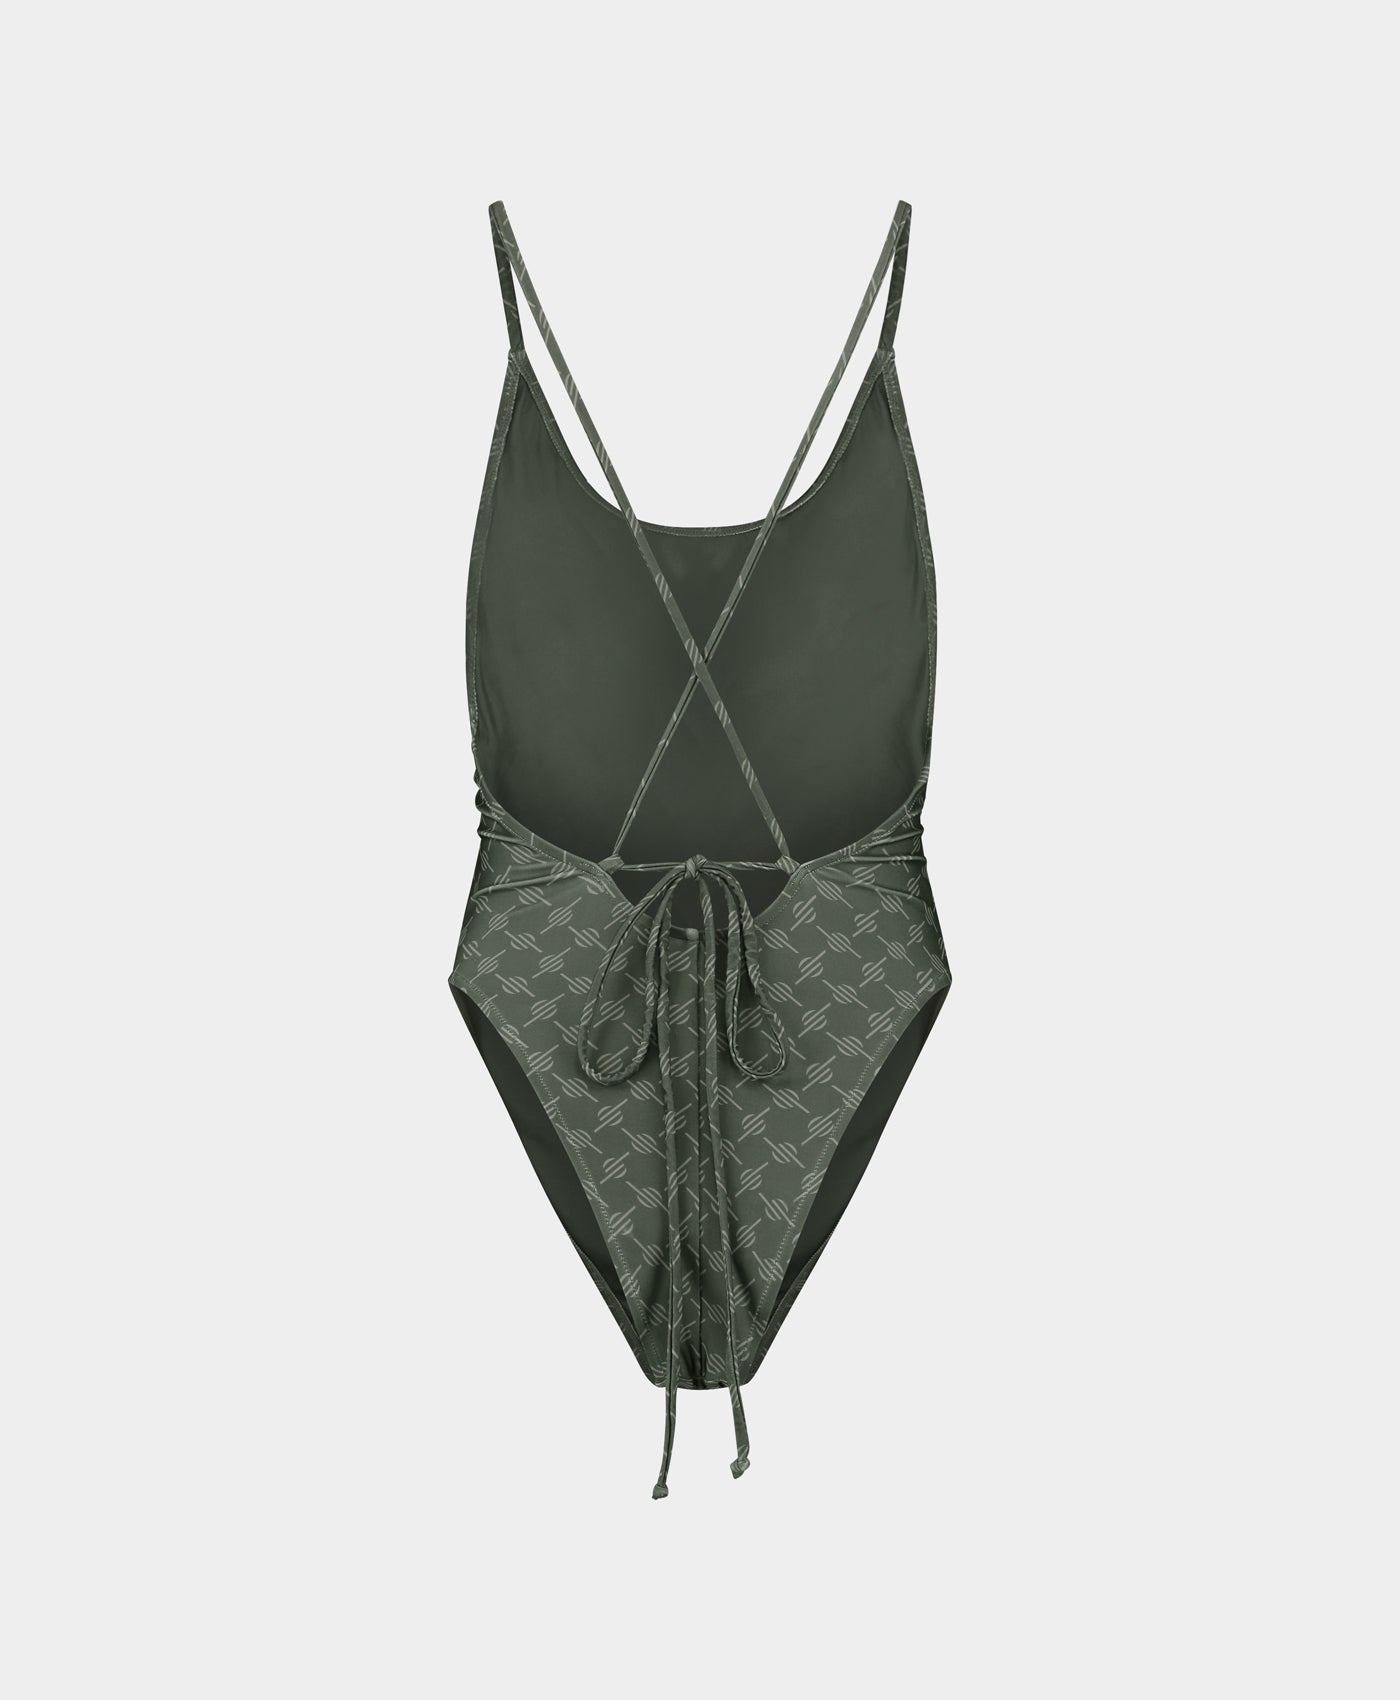 DP - Chimera Grey Reya Monogram Swimsuit - Packshot - Rear